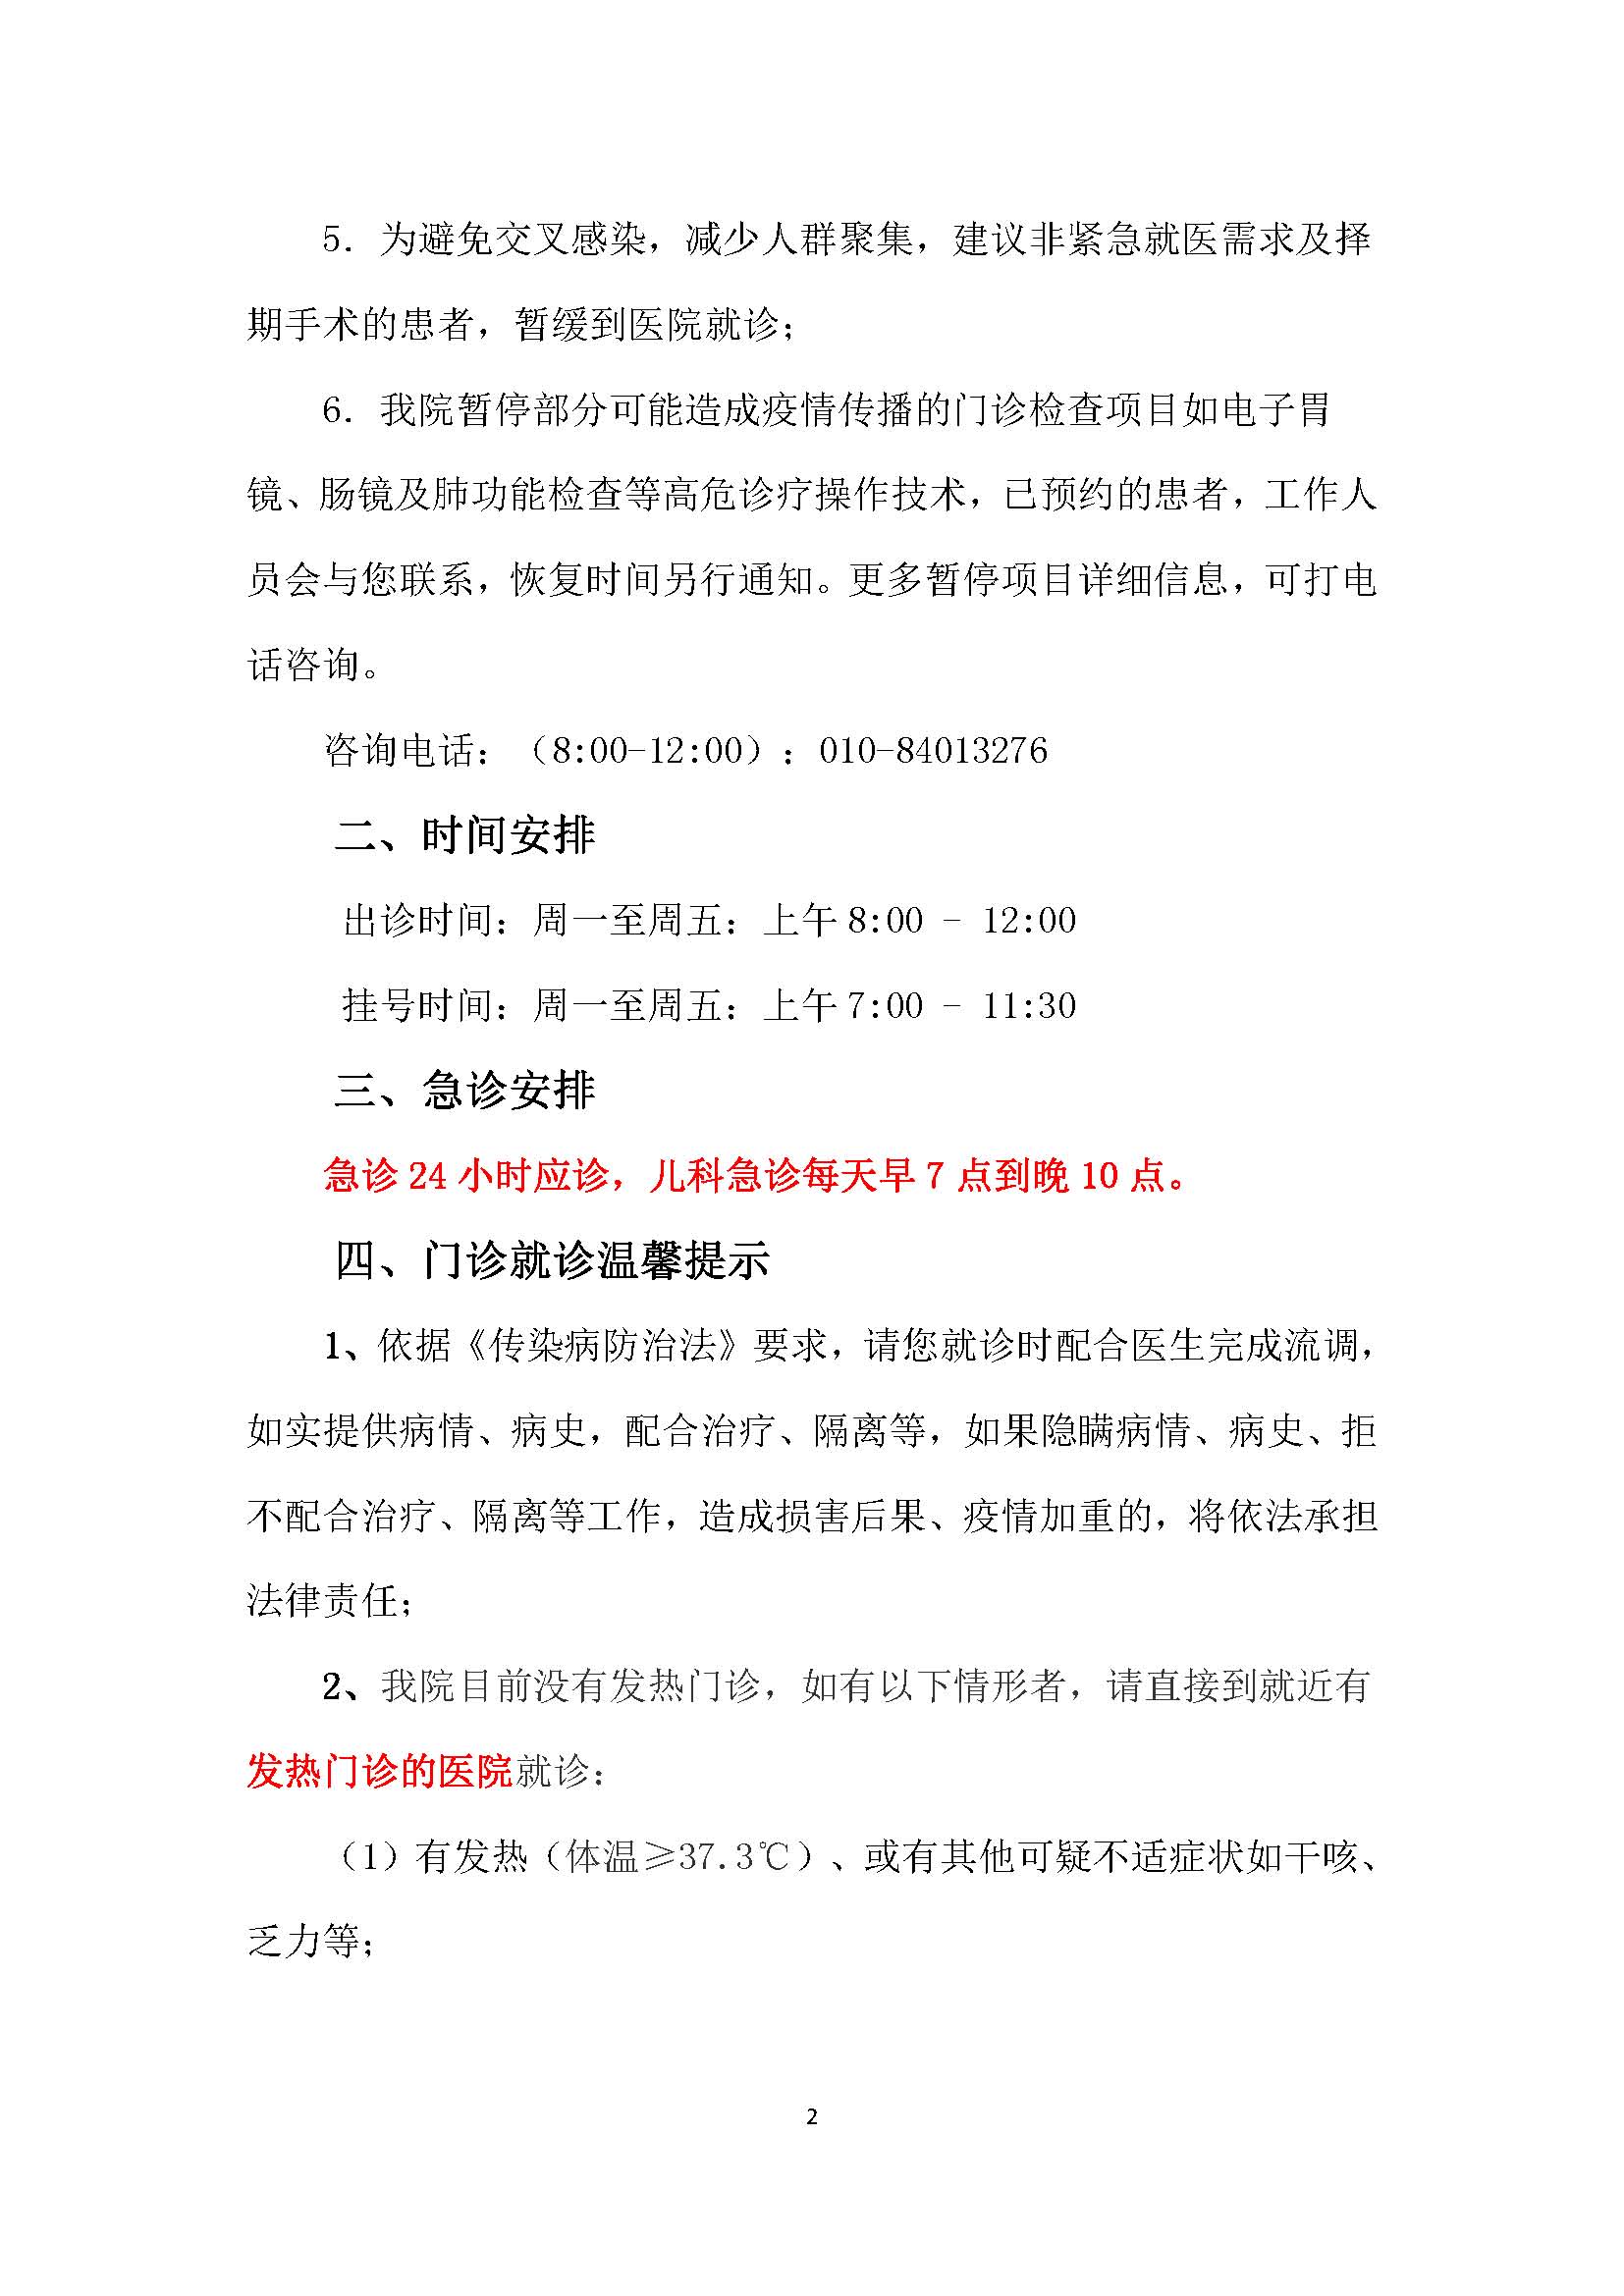 北京中医药大学东直门医院（东城院区） 门诊时间调整的重要通知0207_页面_2.jpg